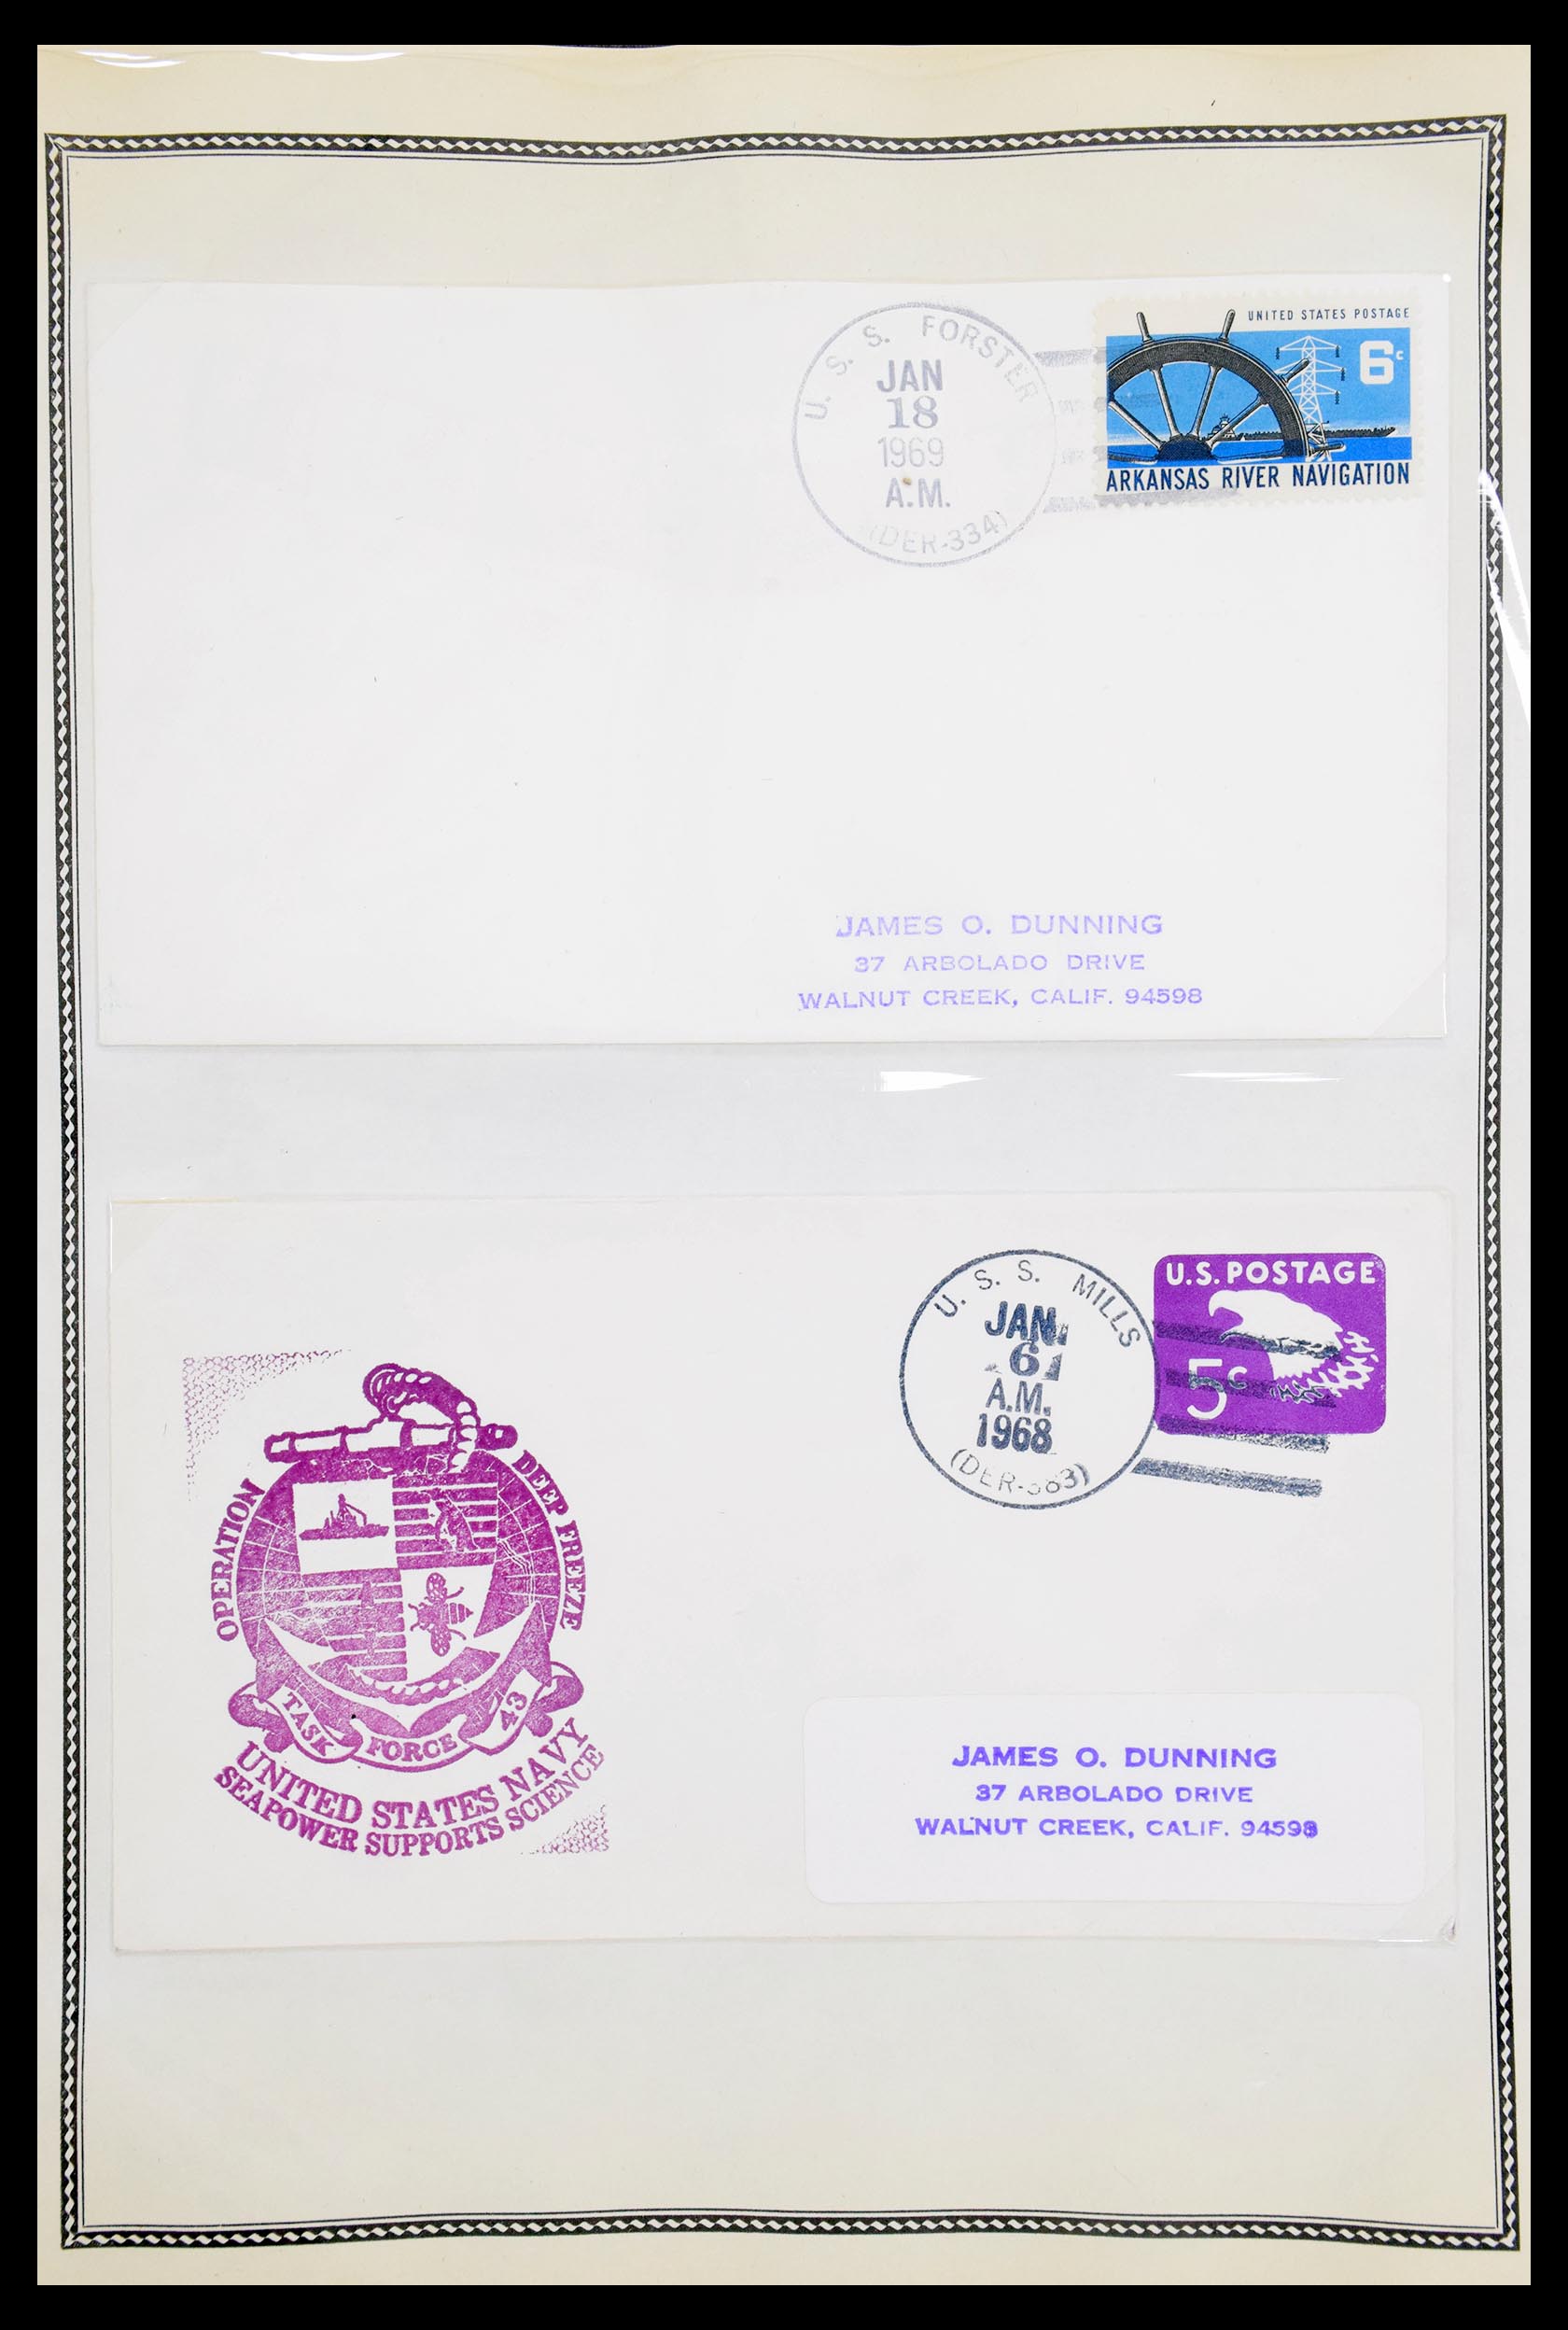 30341 095 - 30341 USA scheepspost brieven 1930-1970.